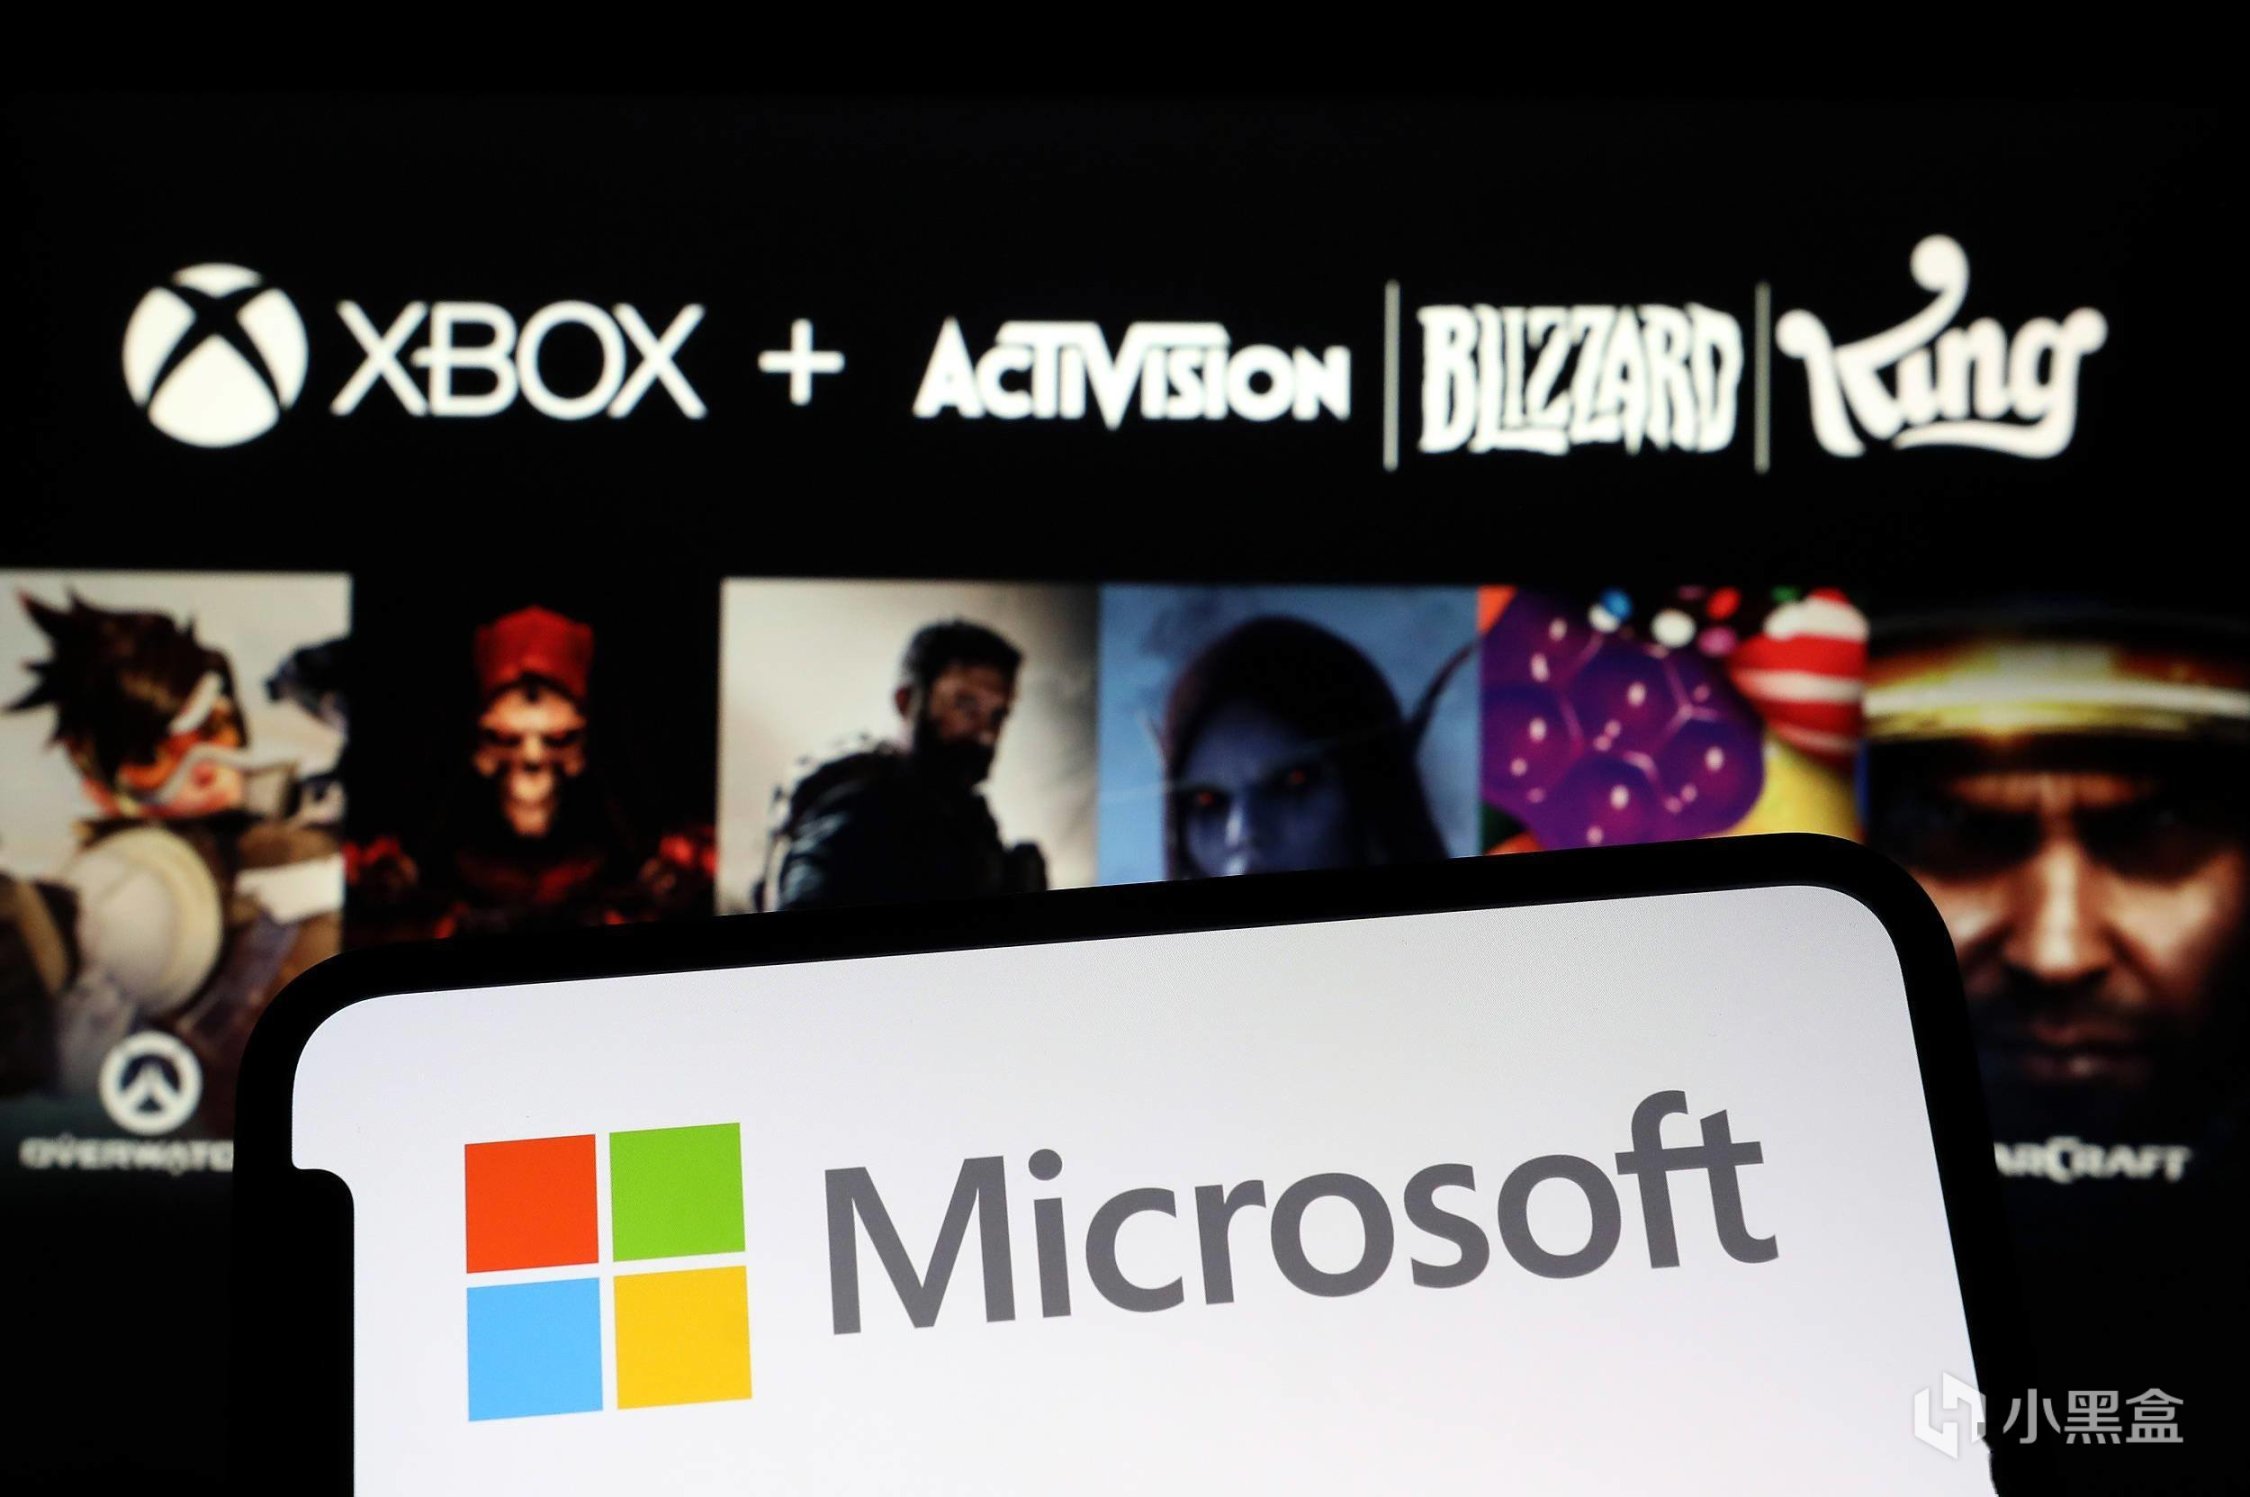 【PC游戏】游戏玩家起诉微软收购动视暴雪损害竞争-第0张